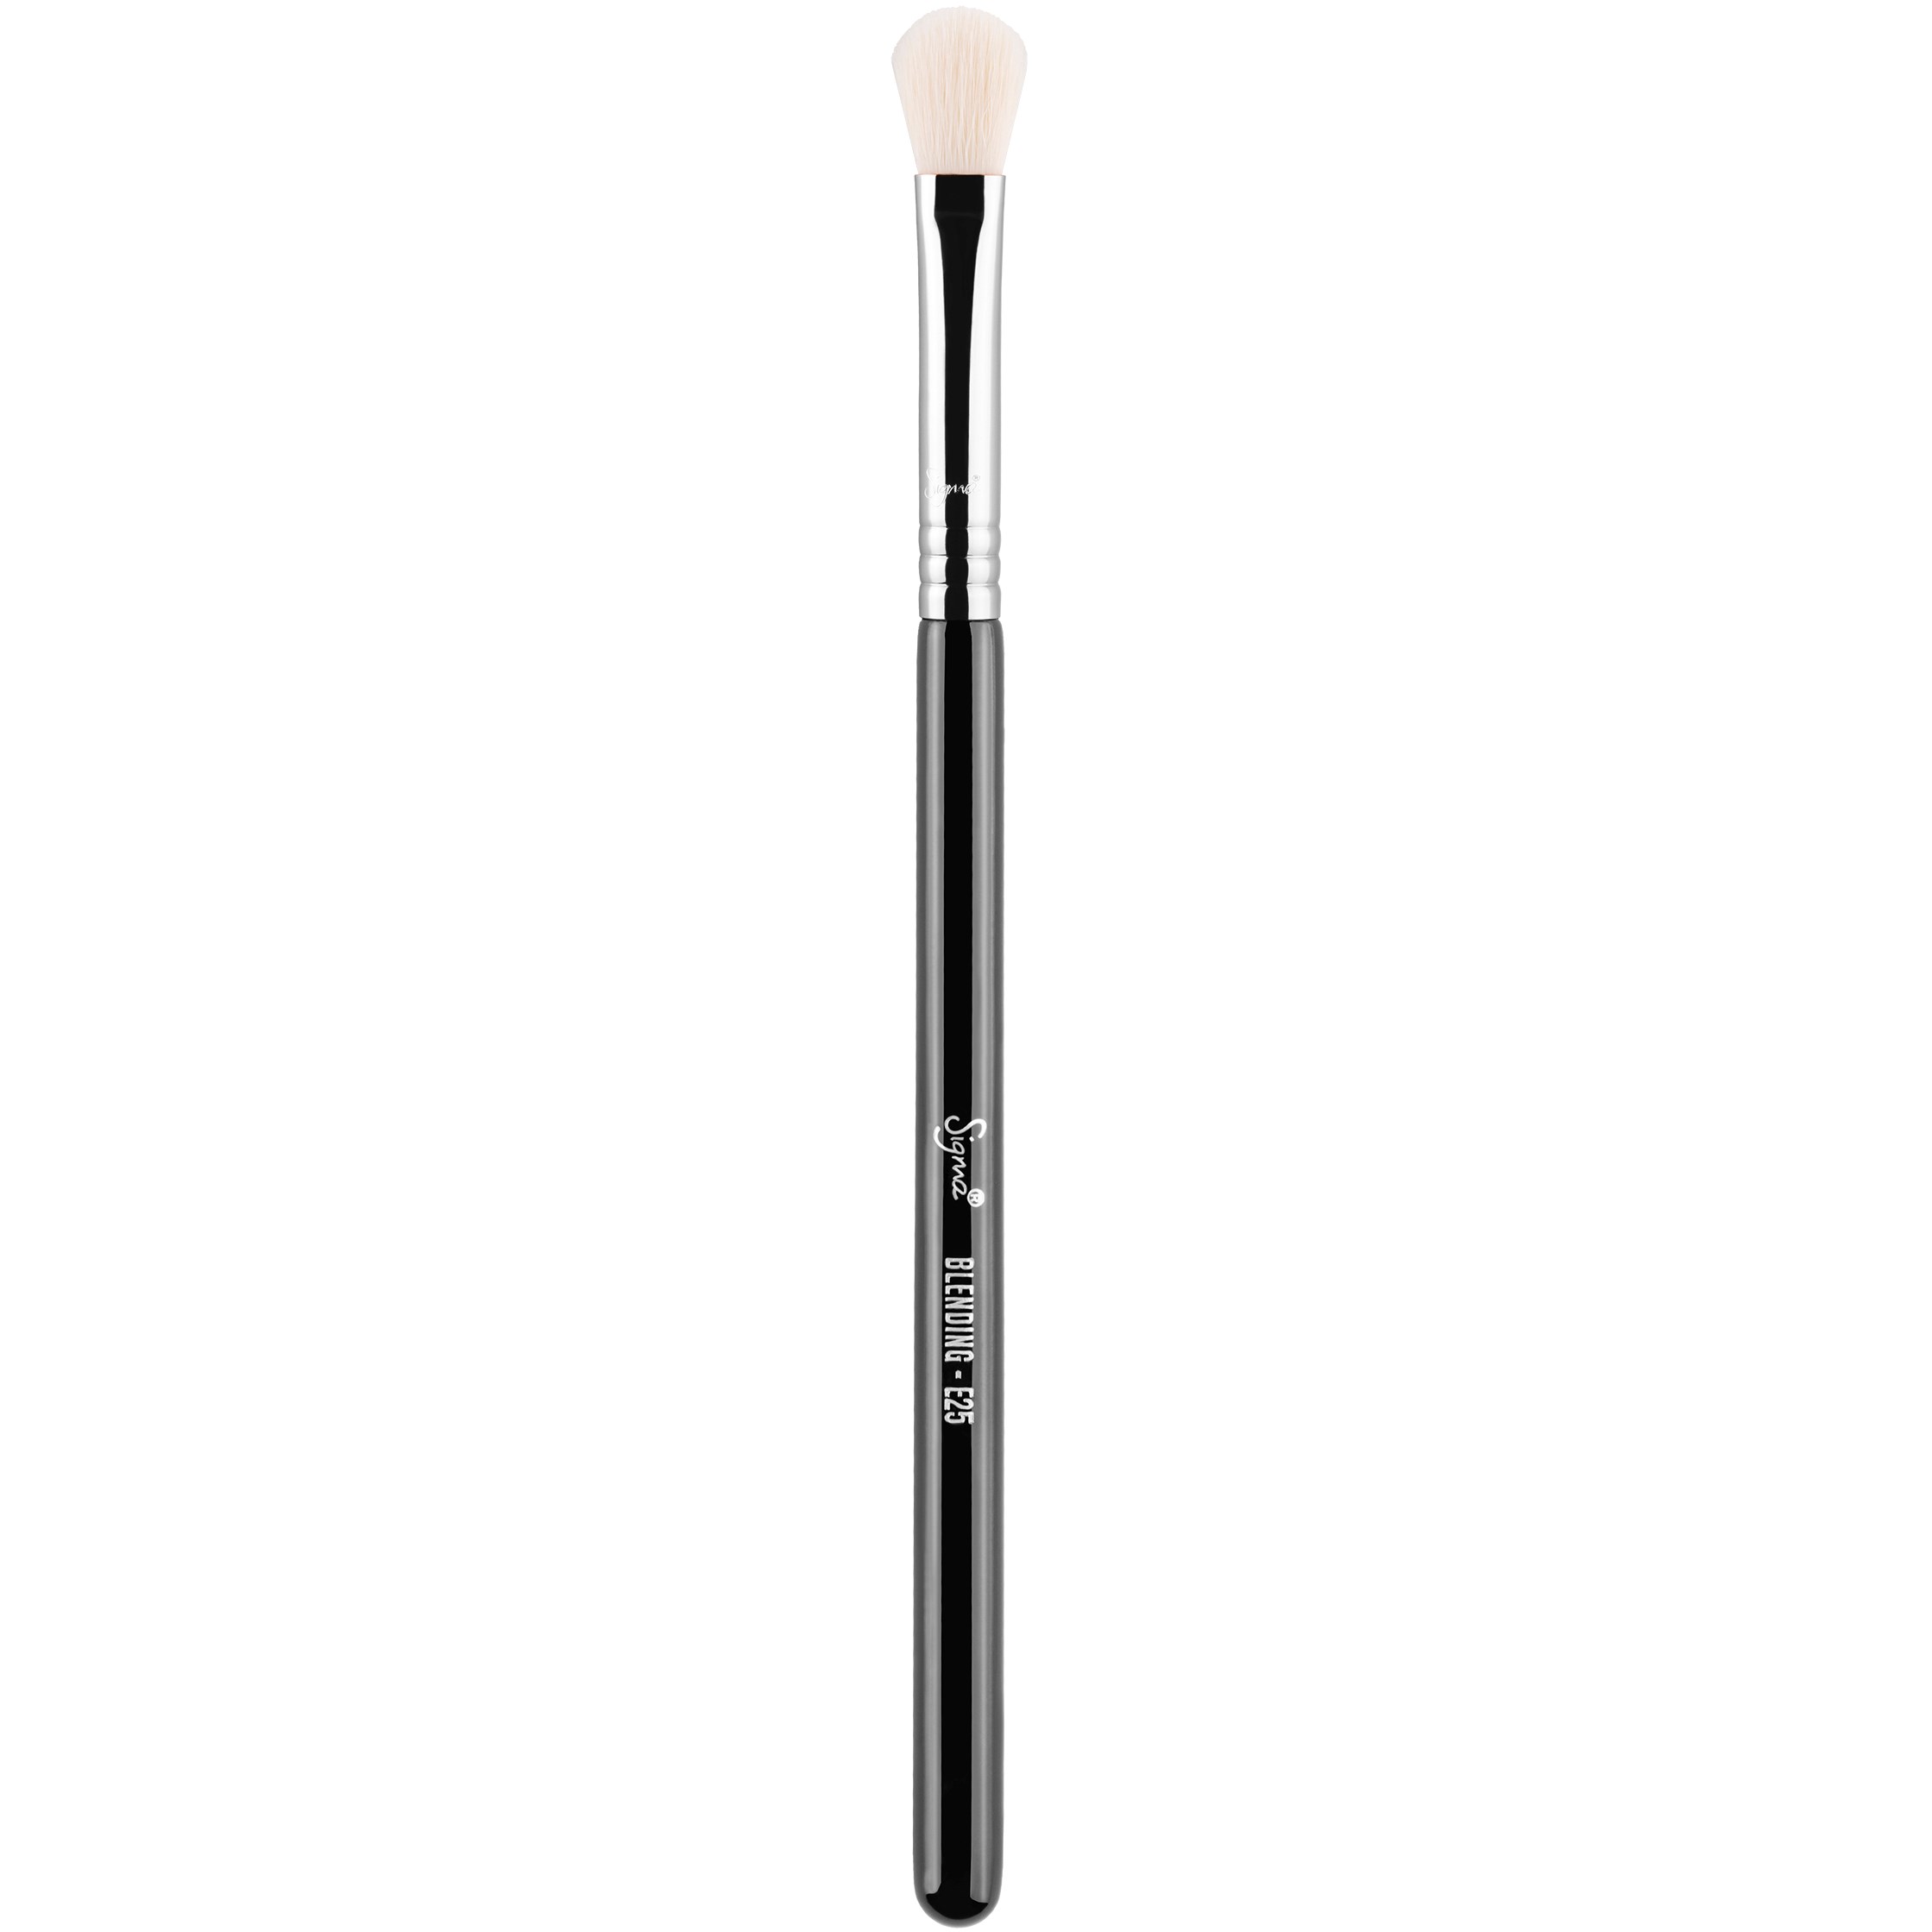 Bilde av Sigma Beauty Brushes E25 - Blending Brush